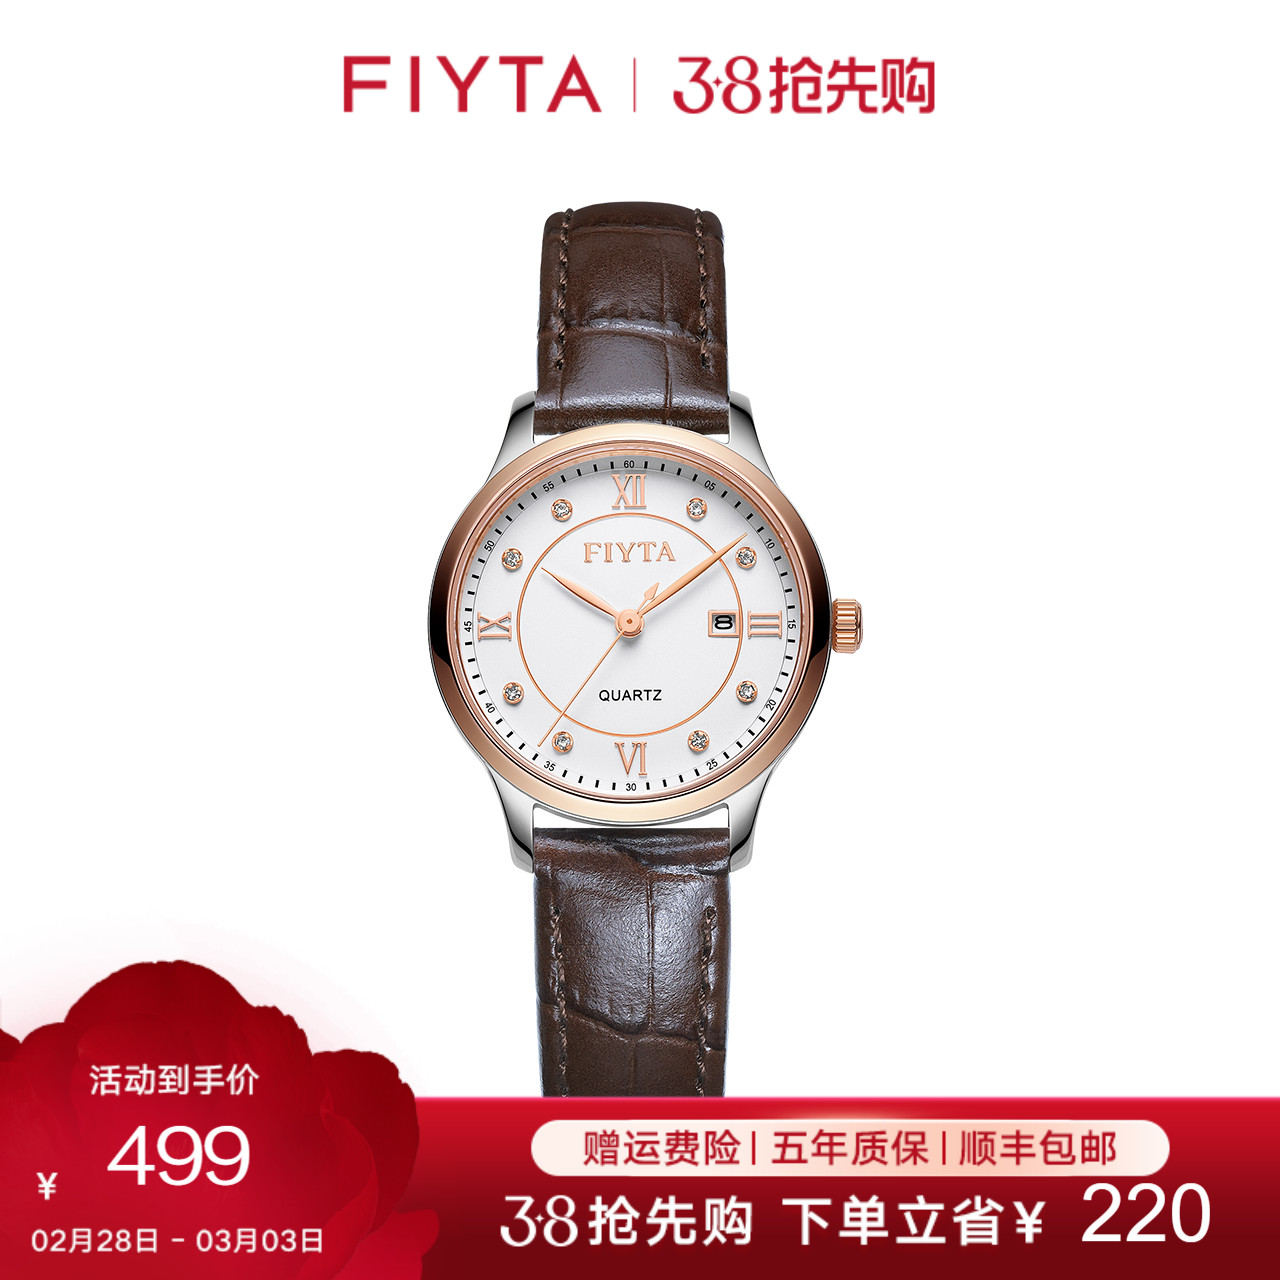 Fiyta クラシック シリーズ 腕時計 レディース ベルト クォーツ時計 レディース 腕時計 シンプル ファッション ニッチ レディース 腕時計